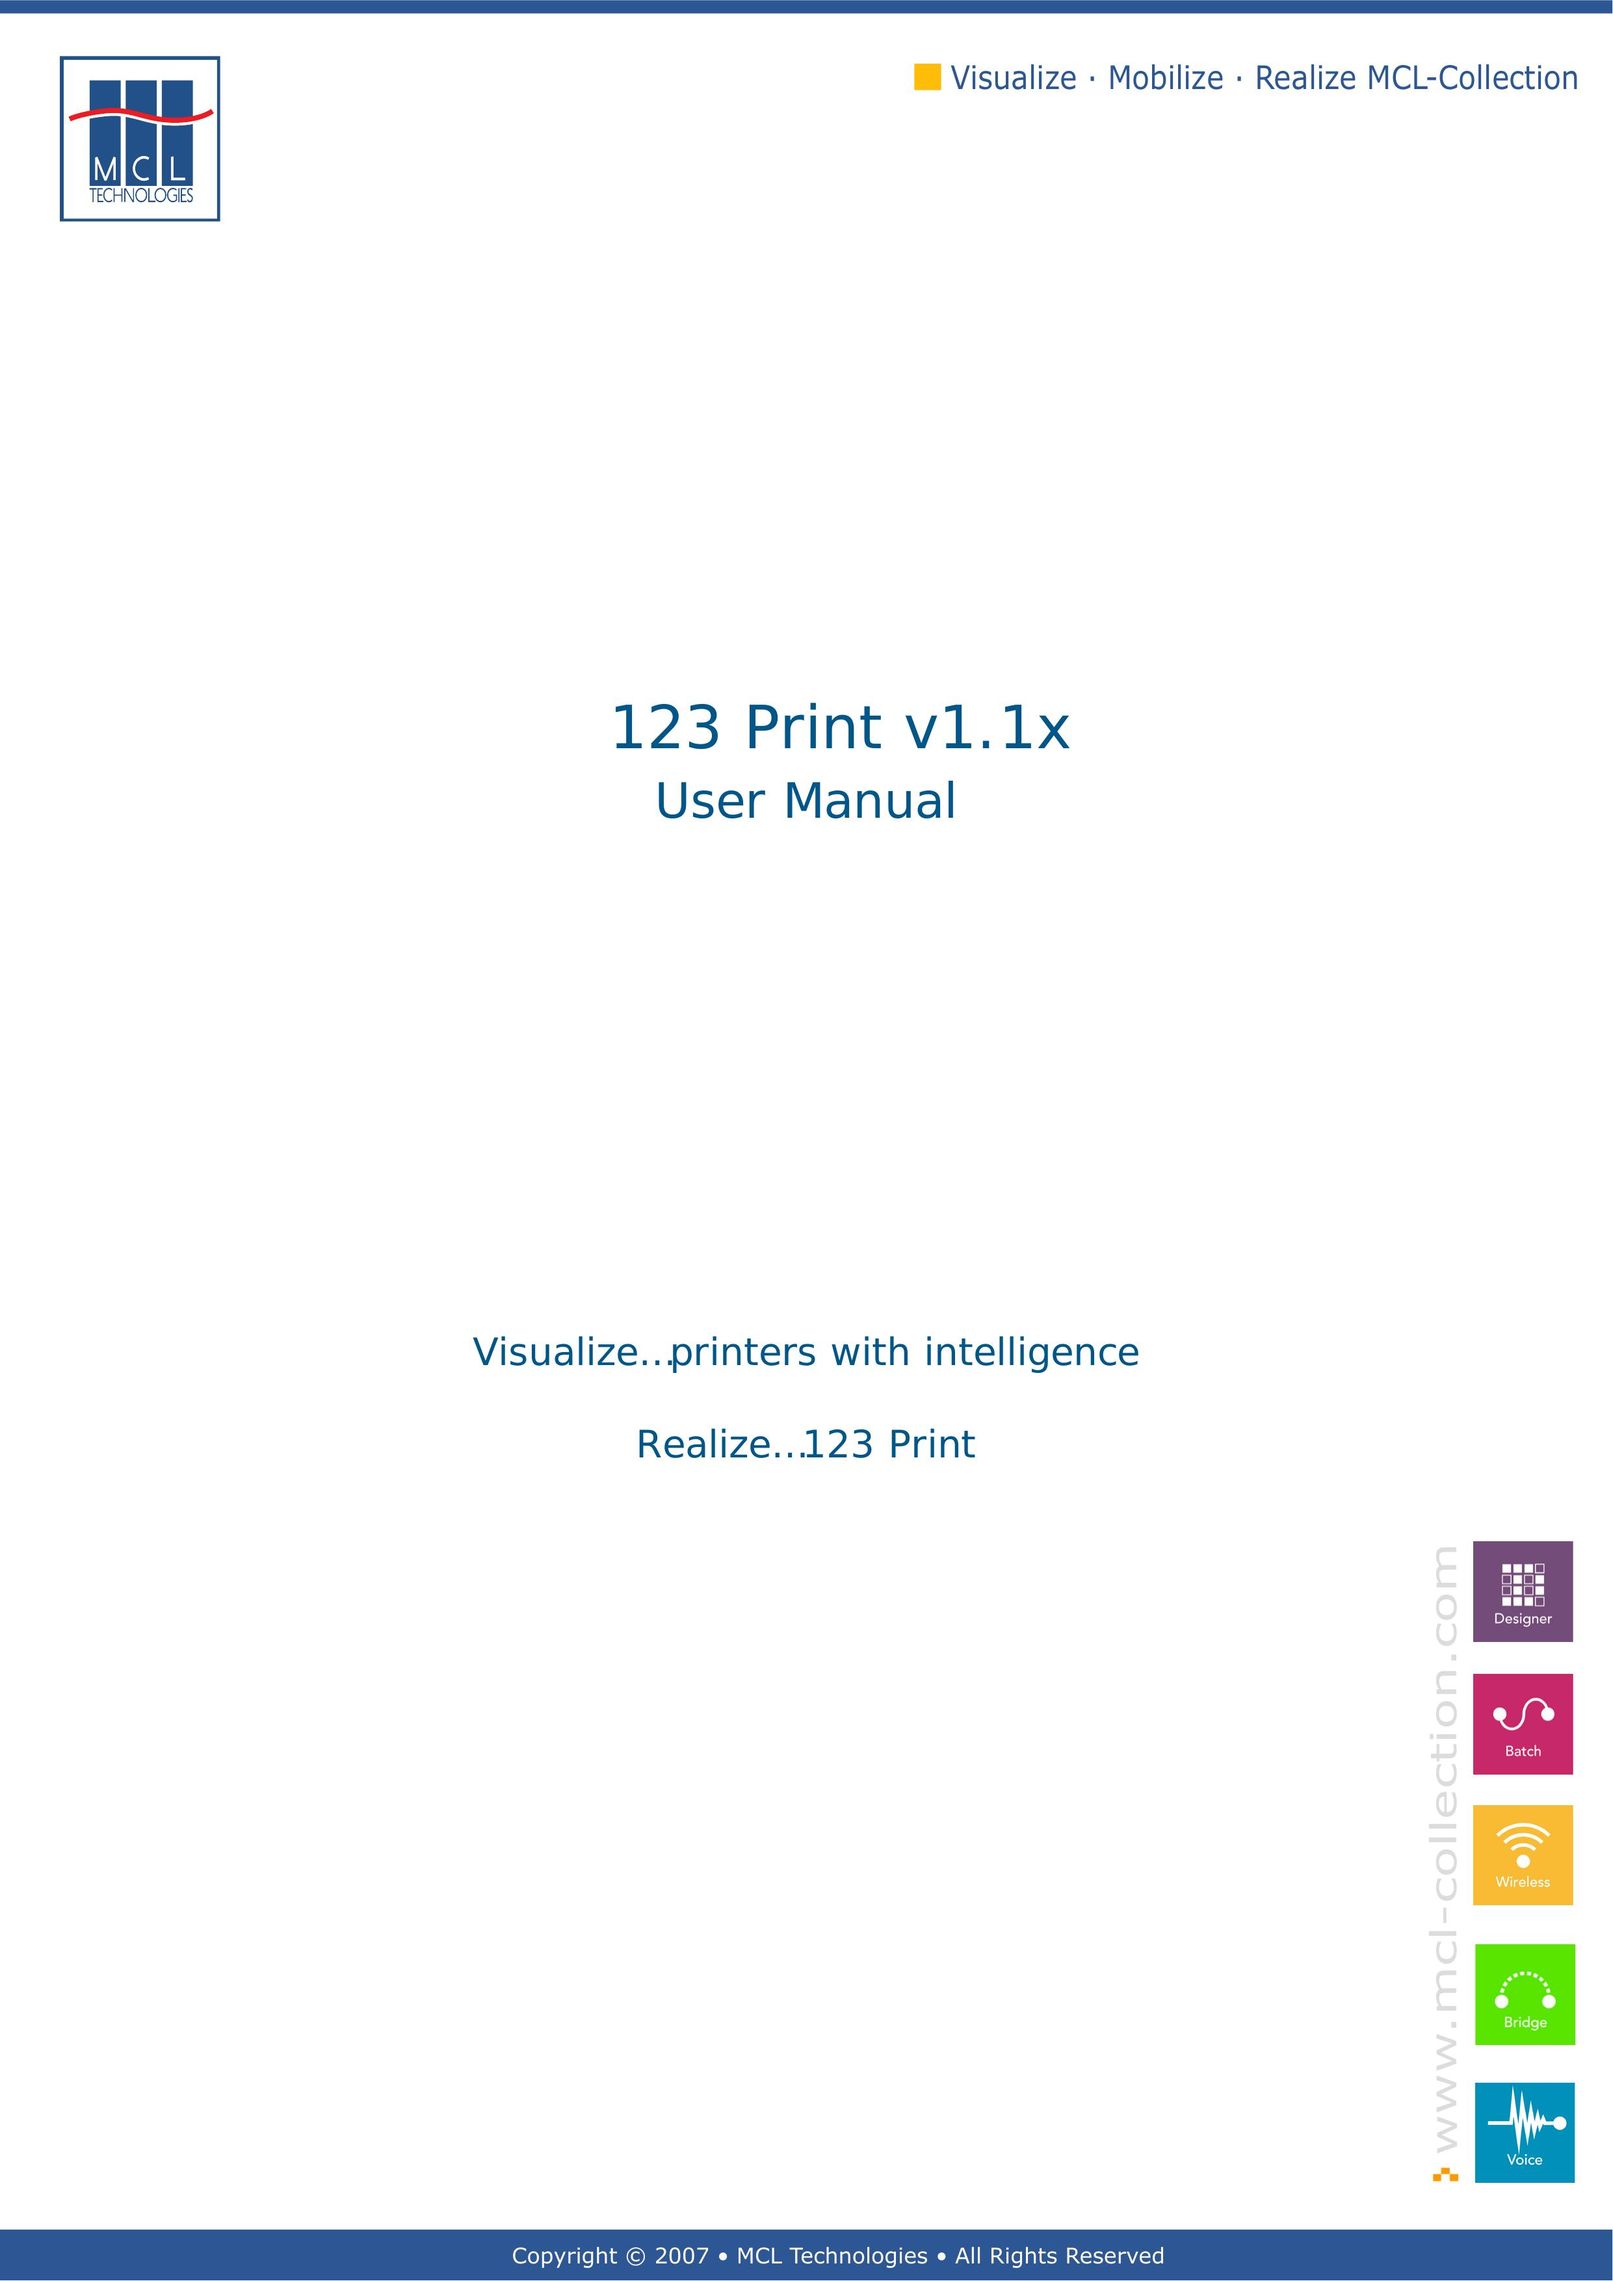 Datamax v1.1x Printer User Manual